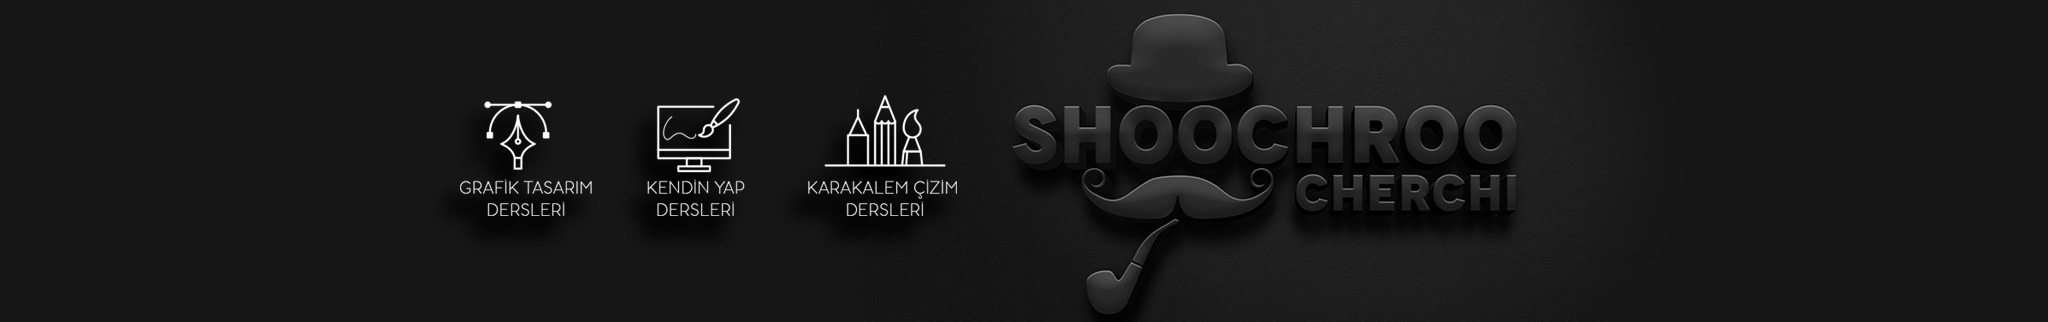 şükrü çerçi's profile banner